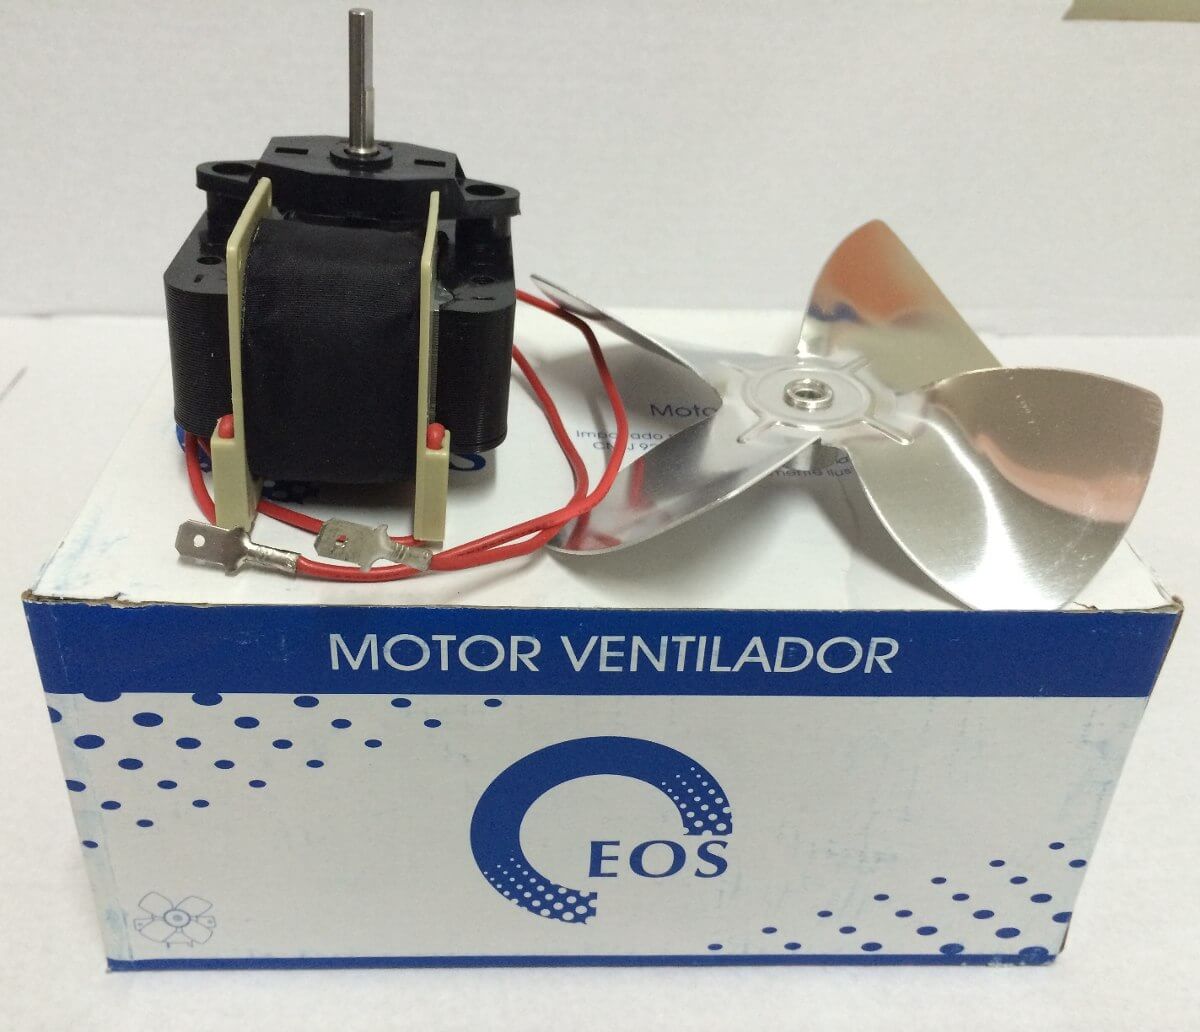 Motor Ventilador Metalfrio 1/100 EOS 220v